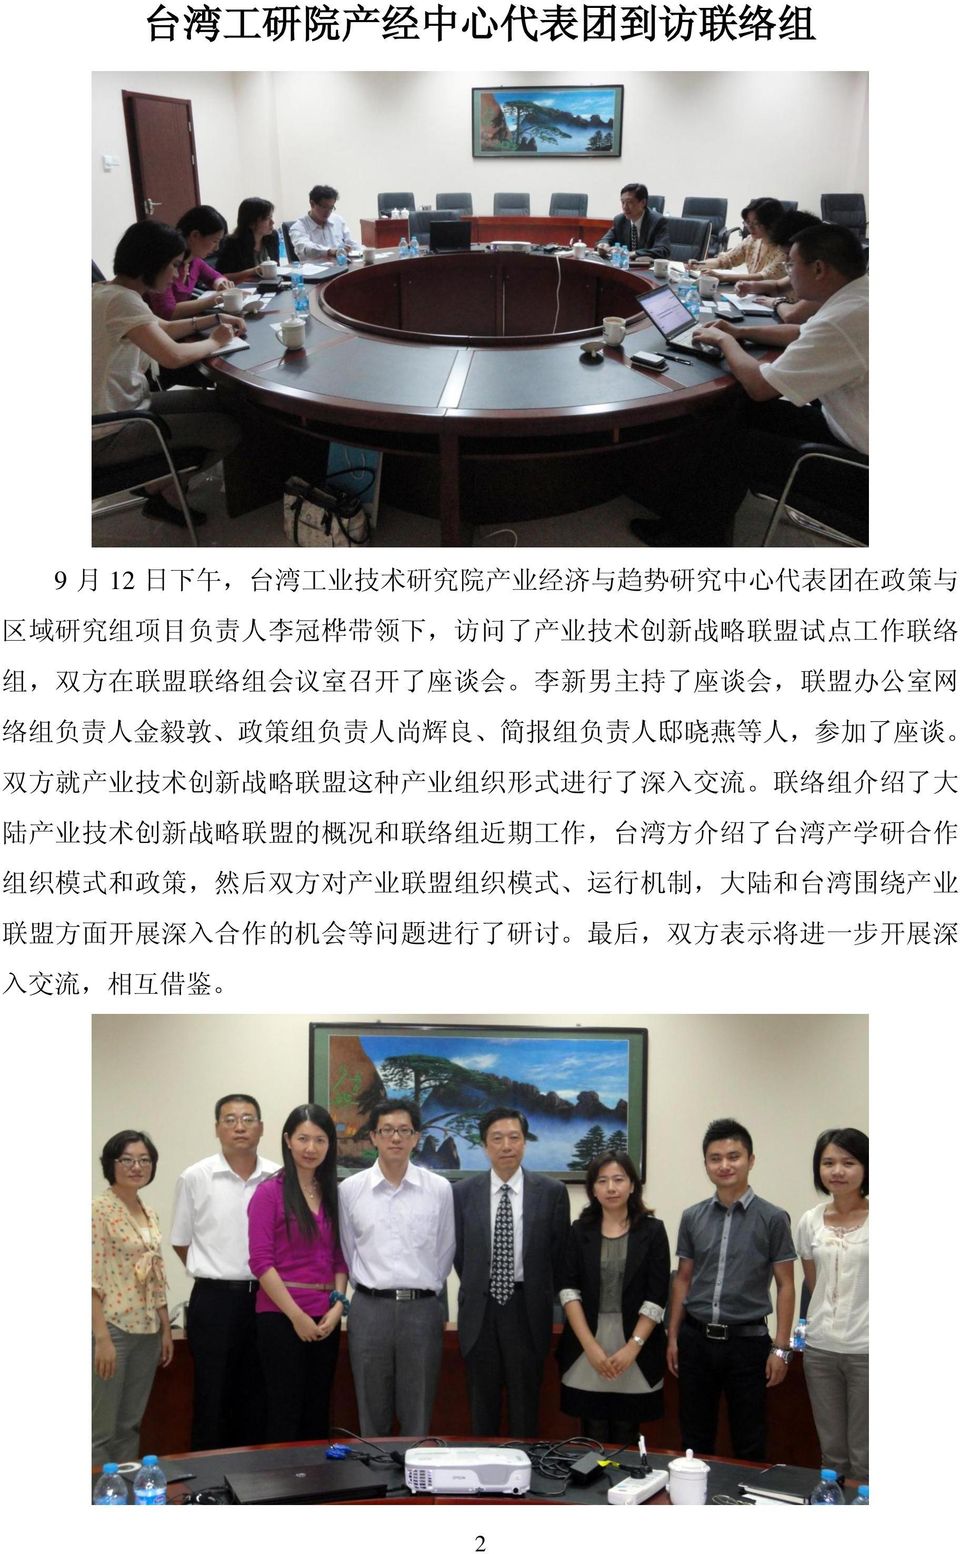 了 座 谈 双 方 就 产 业 技 术 创 新 战 略 联 盟 这 种 产 业 组 织 形 式 进 行 了 深 入 交 流 联 络 组 介 绍 了 大 陆 产 业 技 术 创 新 战 略 联 盟 的 概 况 和 联 络 组 近 期 工 作, 台 湾 方 介 绍 了 台 湾 产 学 研 合 作 组 织